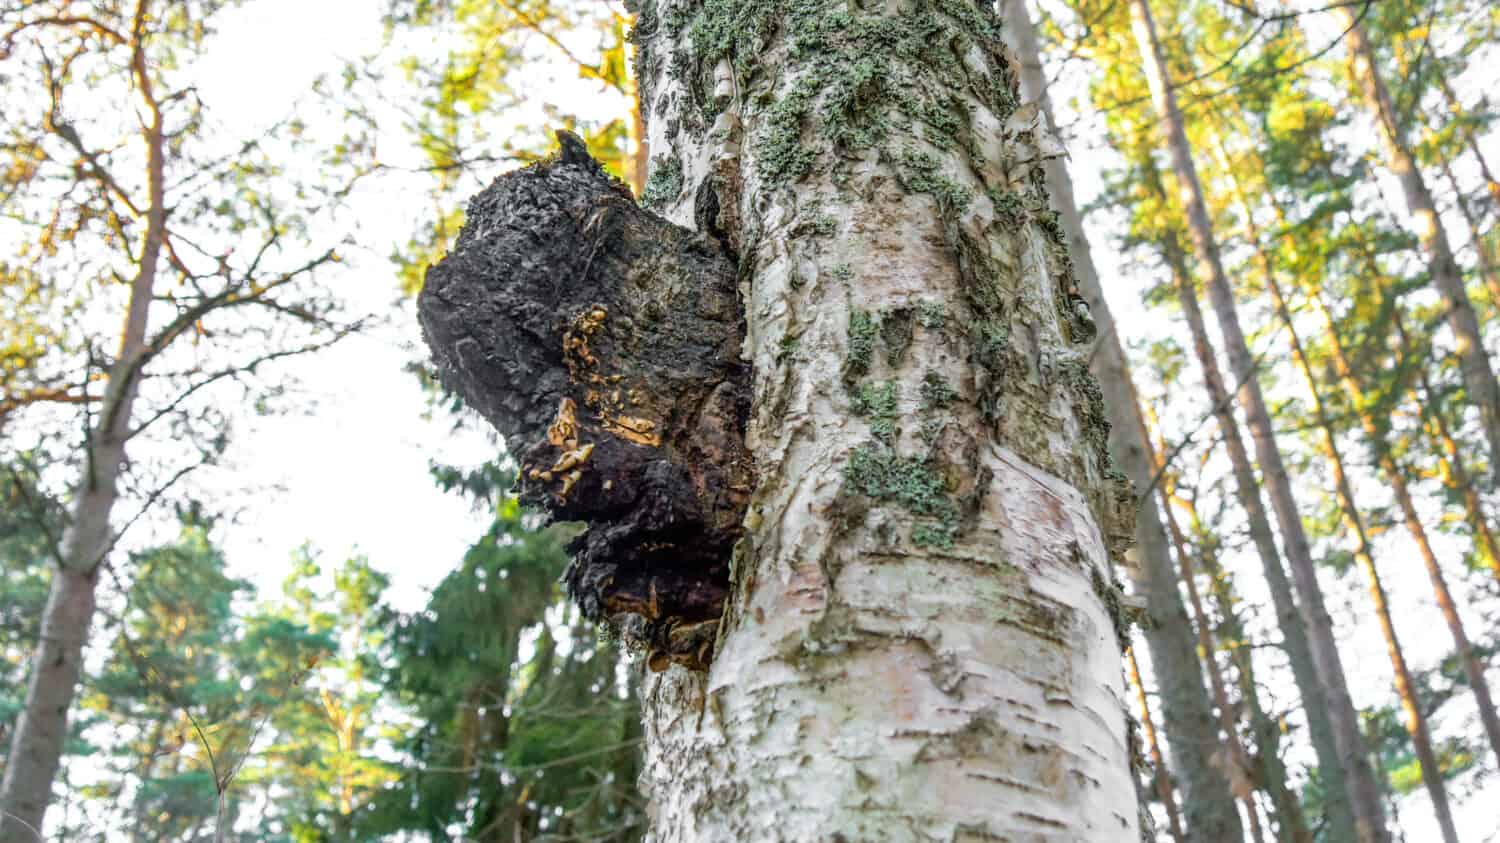 Un fungo chaga nero su un albero di betulla.  Inonotus obliquus comunemente noto come fungo chaga è un fungo della famiglia delle Hymenochaetaceae.  È parassita su betulla e altri alberi.